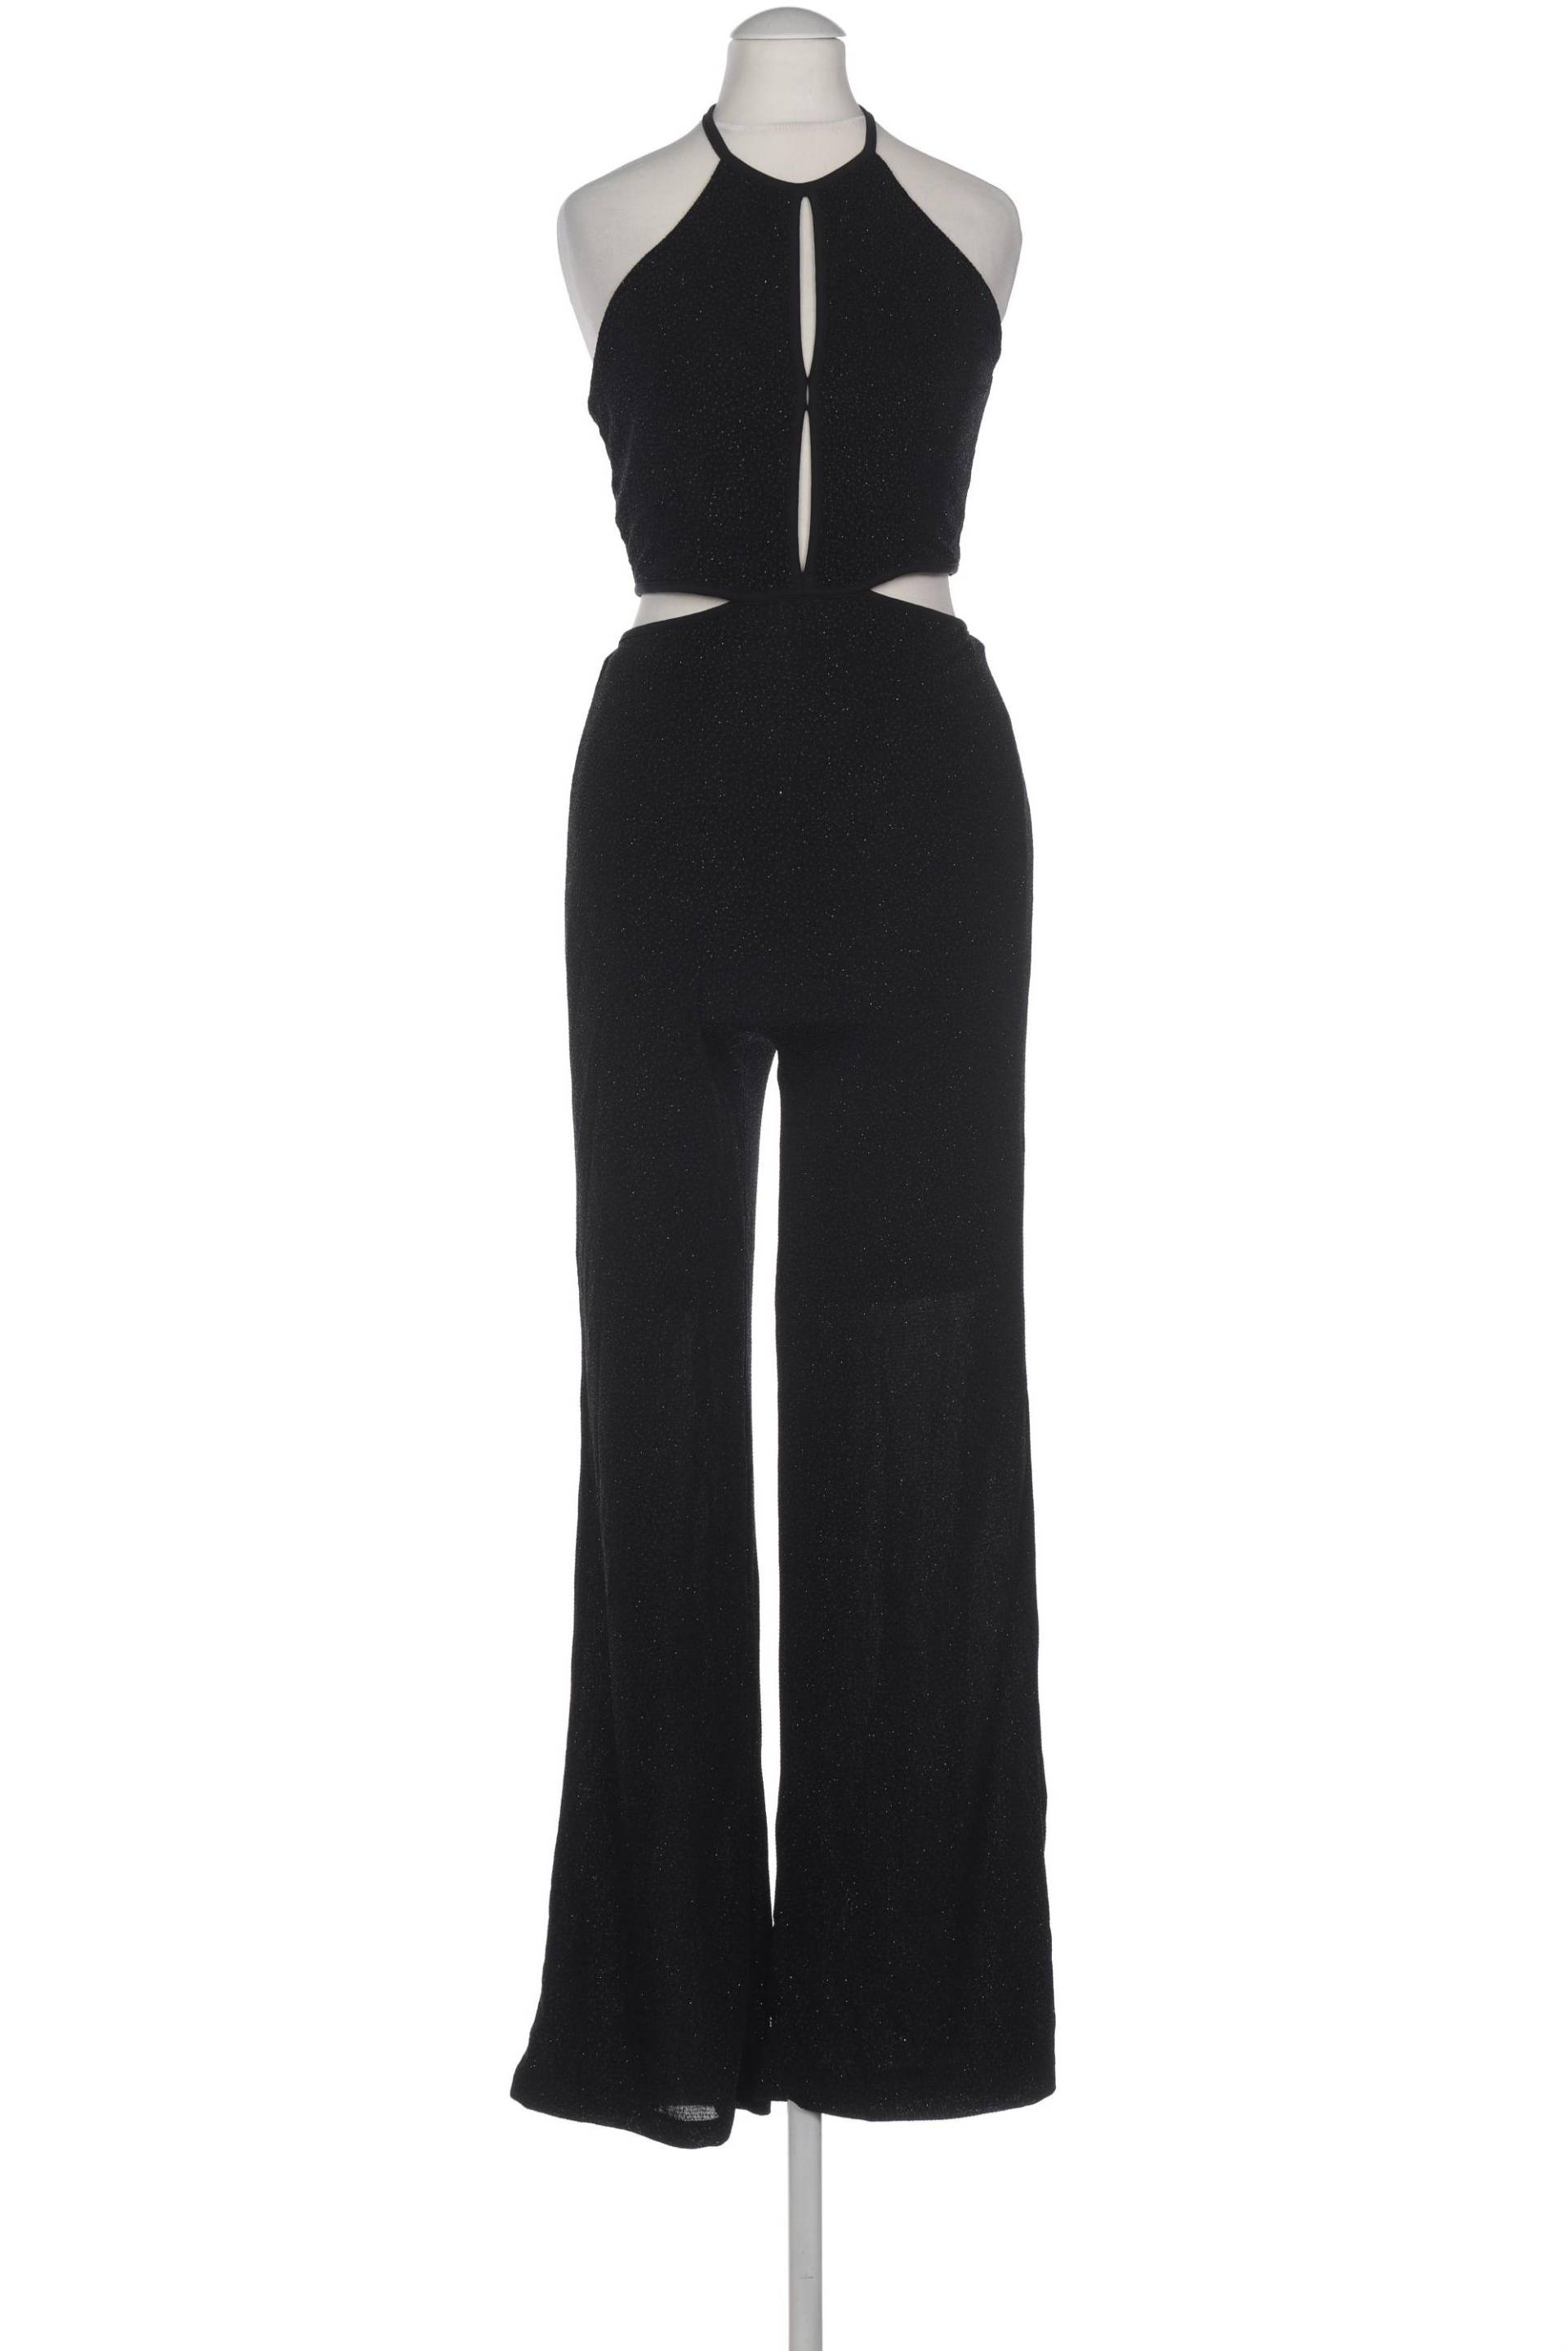 H&M Damen Jumpsuit/Overall, schwarz, Gr. 34 von H&M